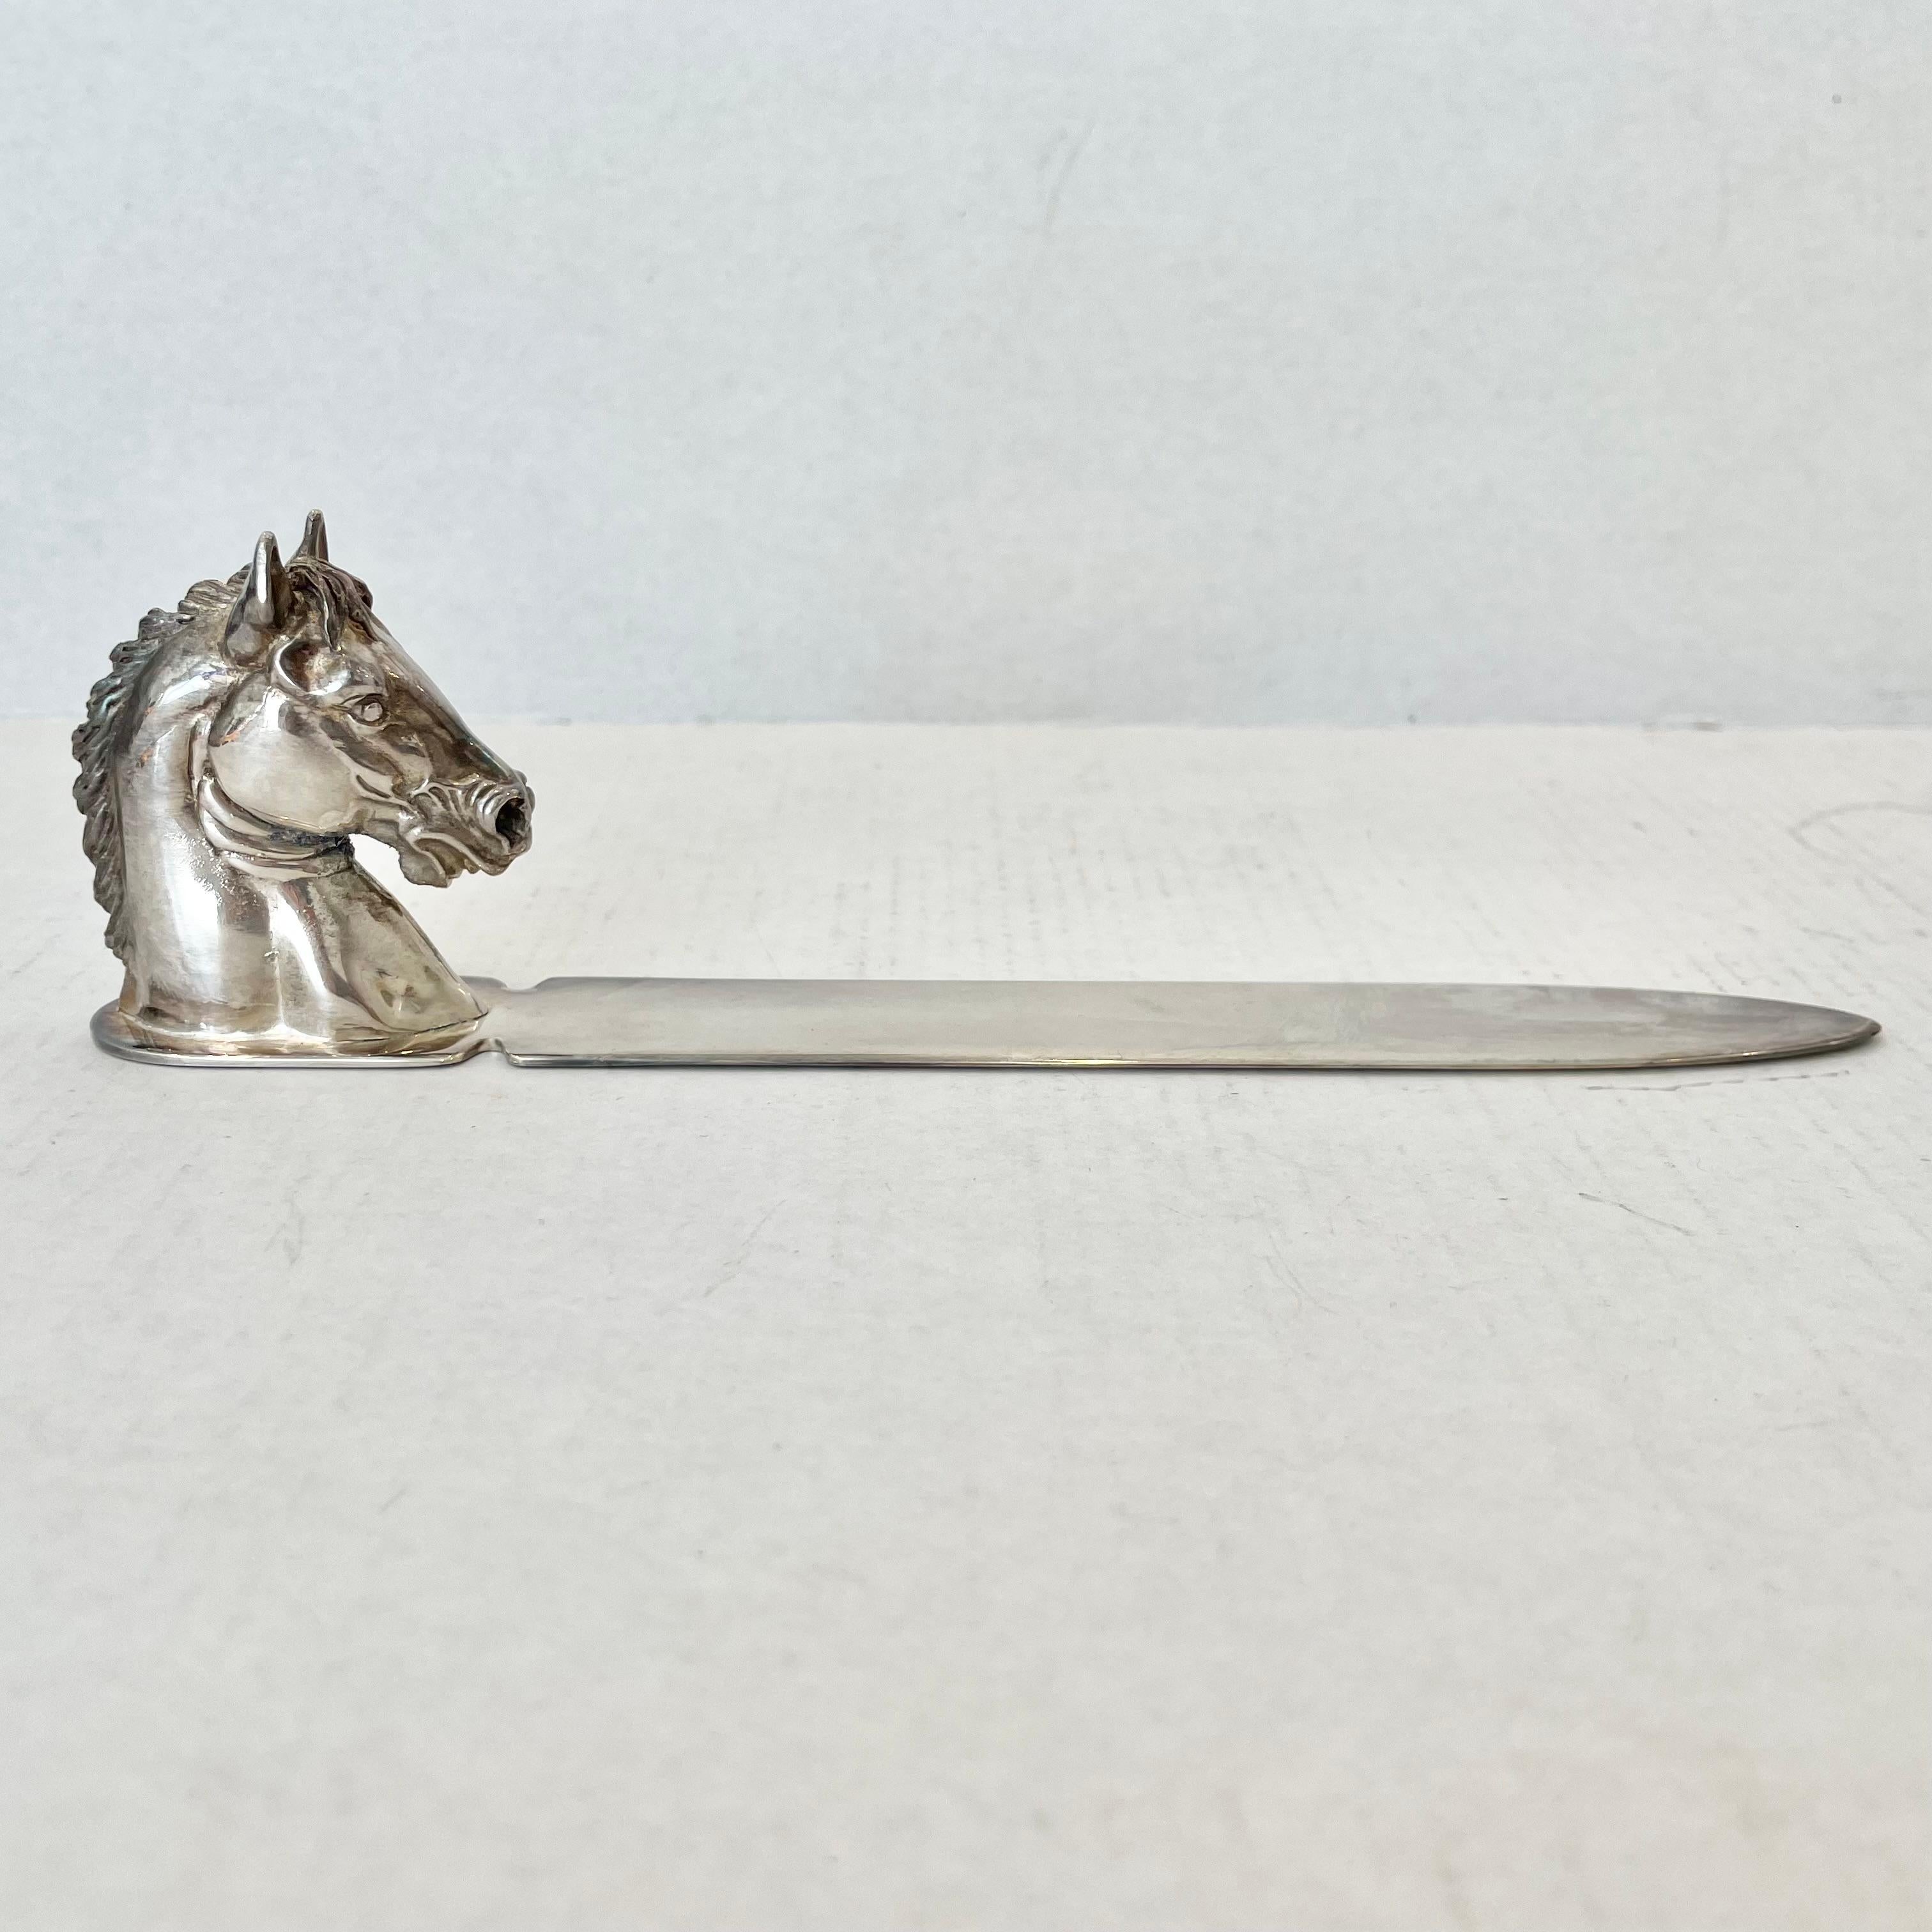 Toller Brieföffner von Reed & Barton mit einem detaillierten Pferdekopfgriff aus massivem versilbertem Metall. Reed & Barton 274 auf der Basis des Griffs gestempelt. Das Silber hat eine elegante Patina. Dieses Stück ist eine beeindruckende und